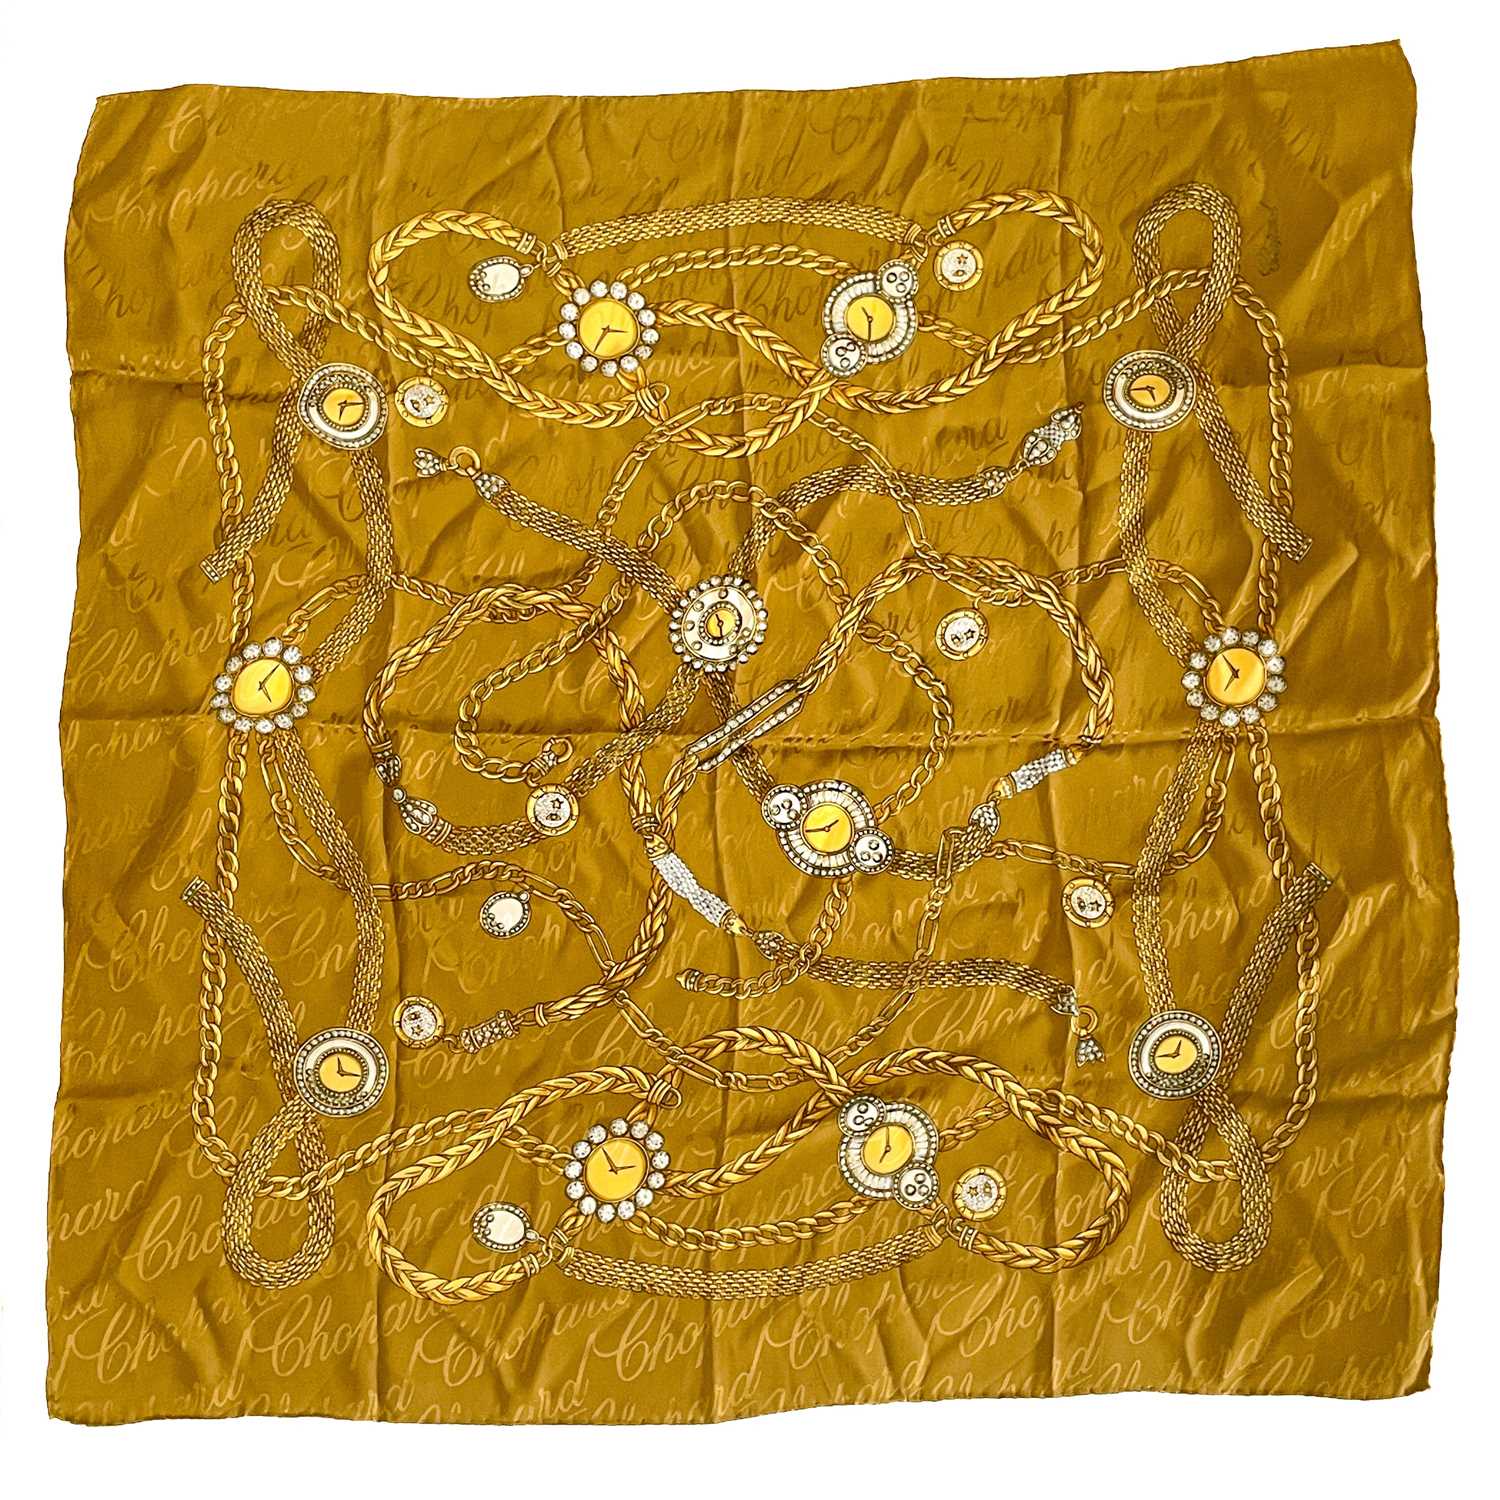 Lot 107 - Chopard - a vintage printed silk scarf.